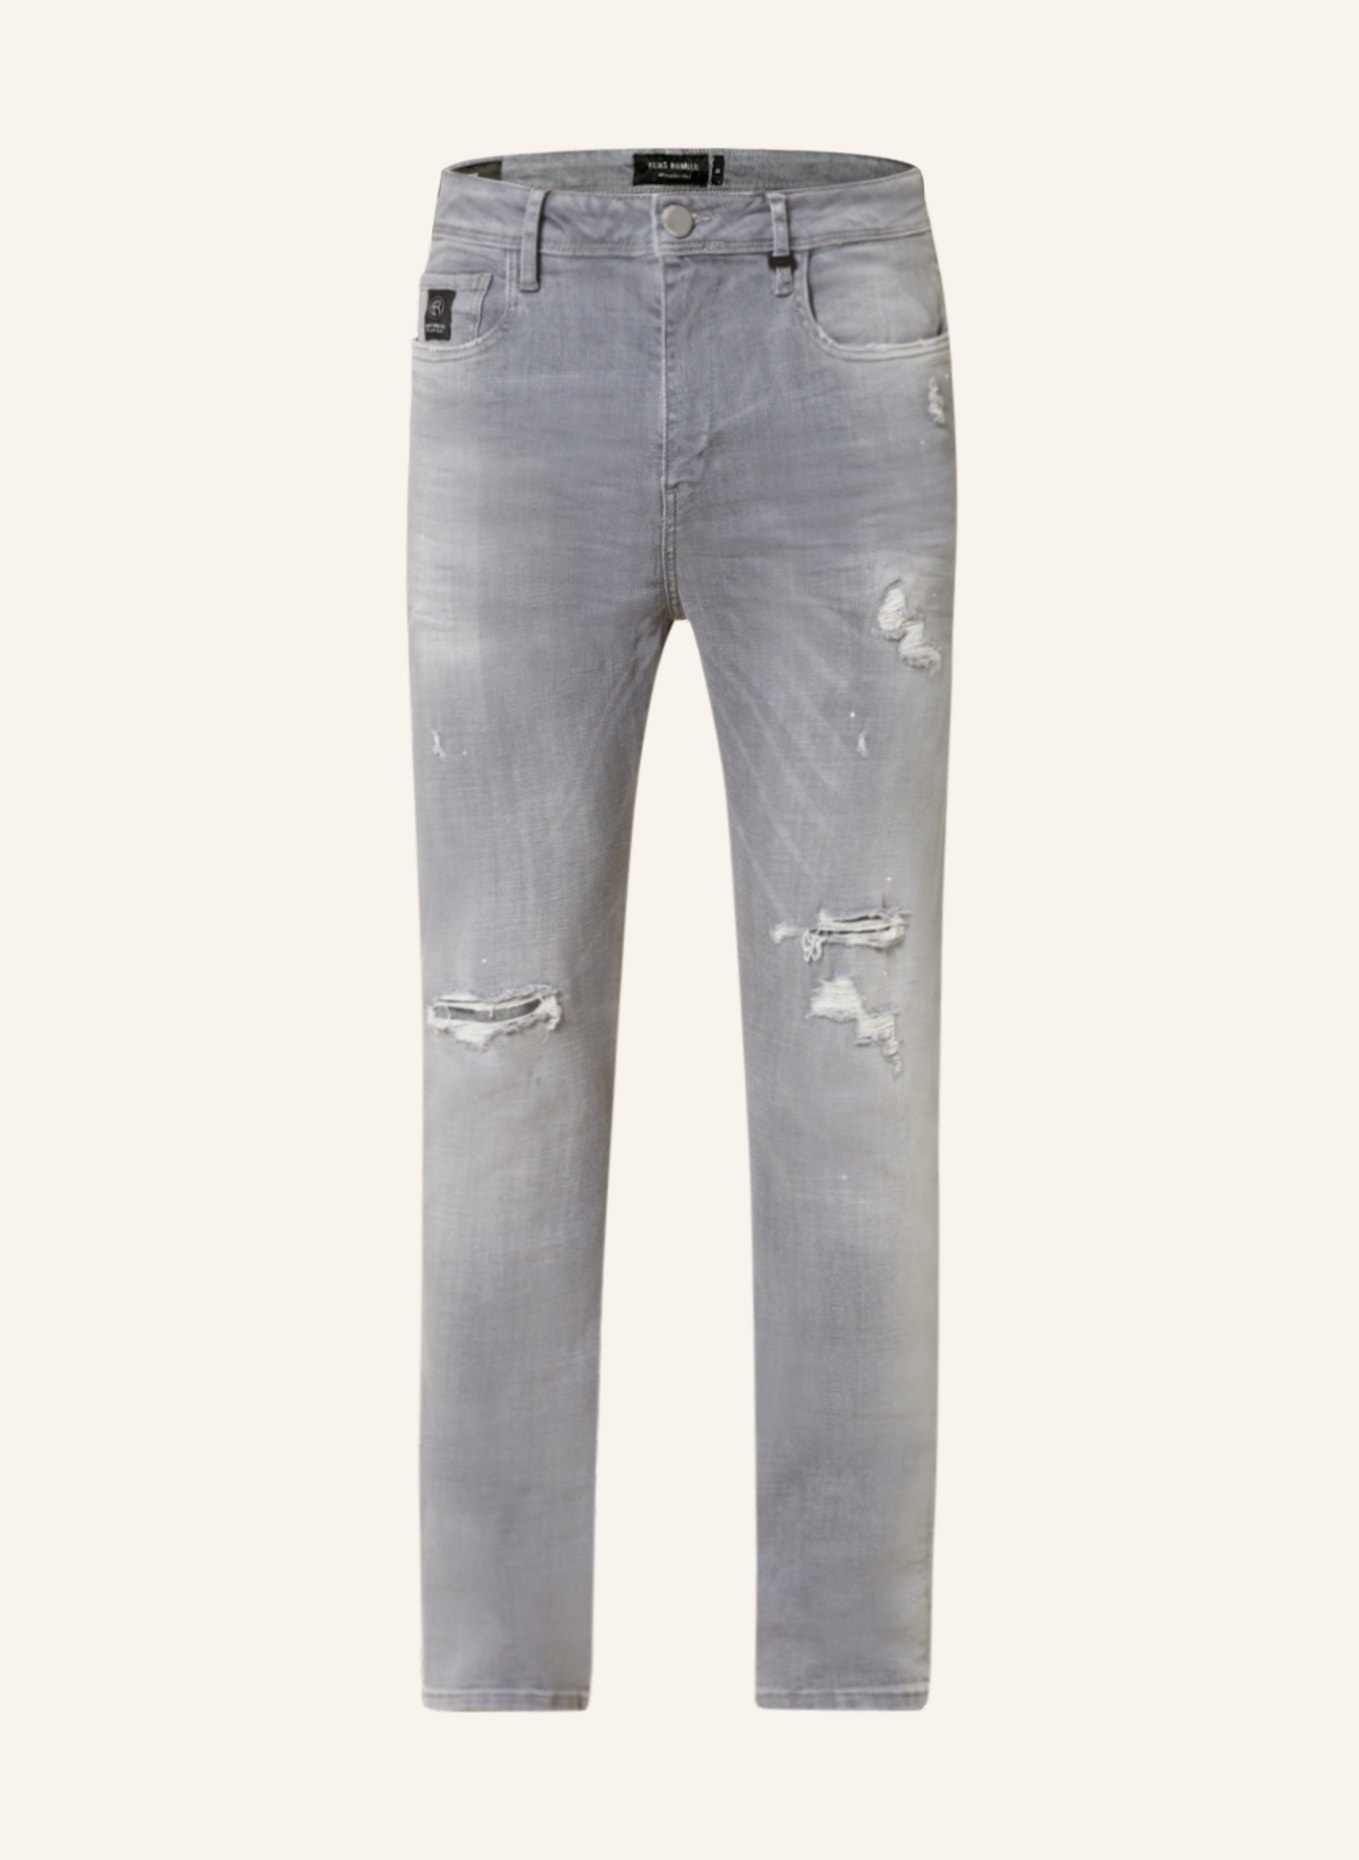 ELIAS RUMELIS Jeans ERZAVEN Comfort Fit, Farbe: 762 Silent Grey (Bild 1)